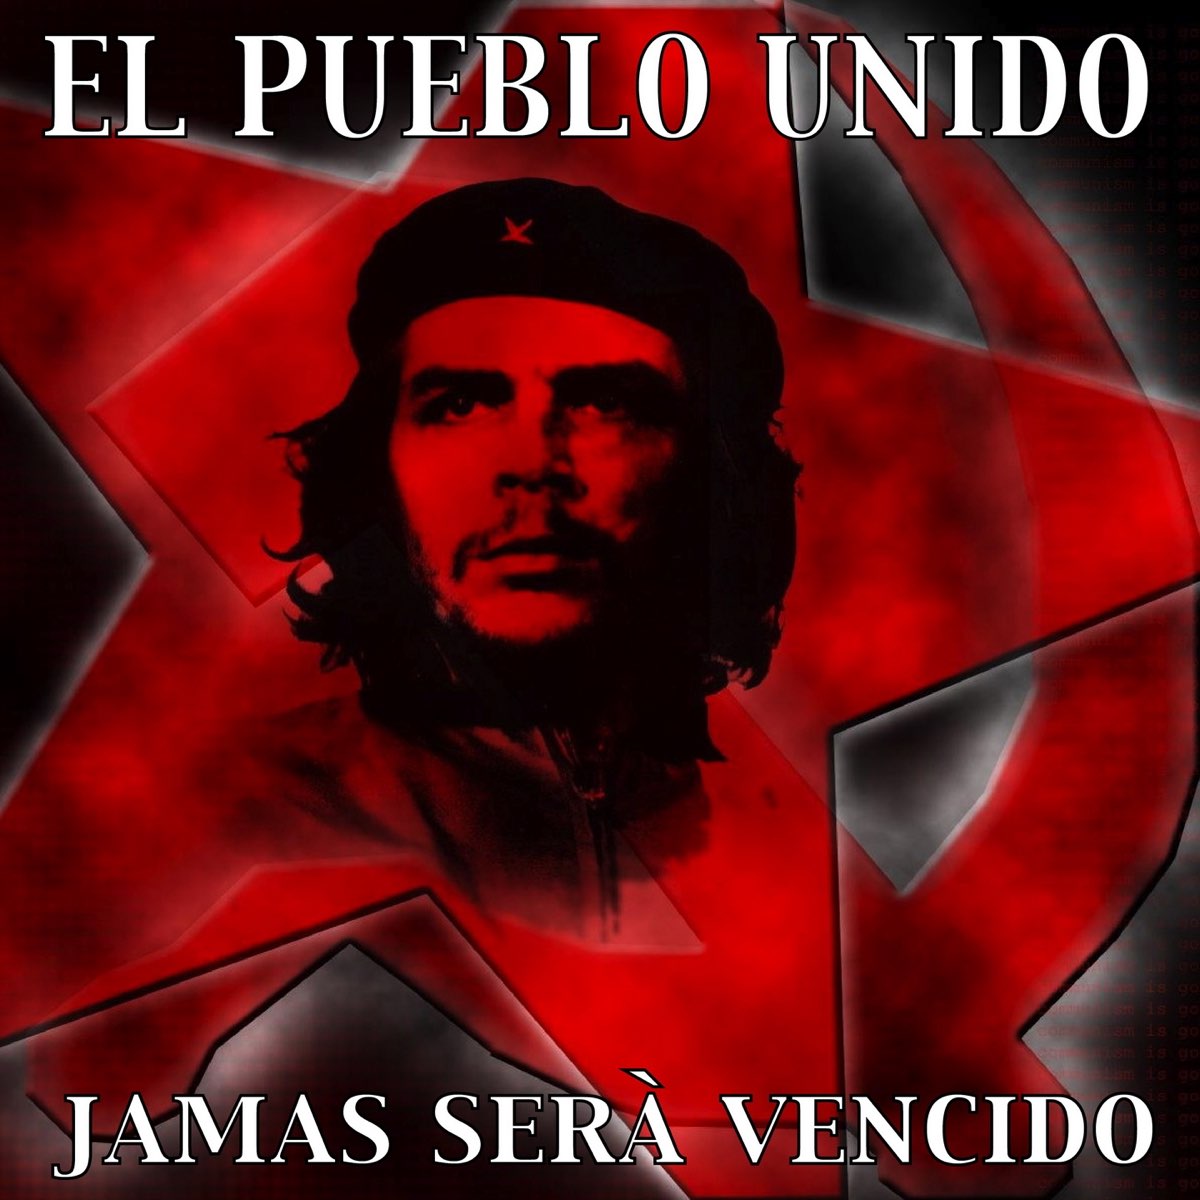 El Pueblo Unido Jamás Será Vencido - Single by Latin Band.